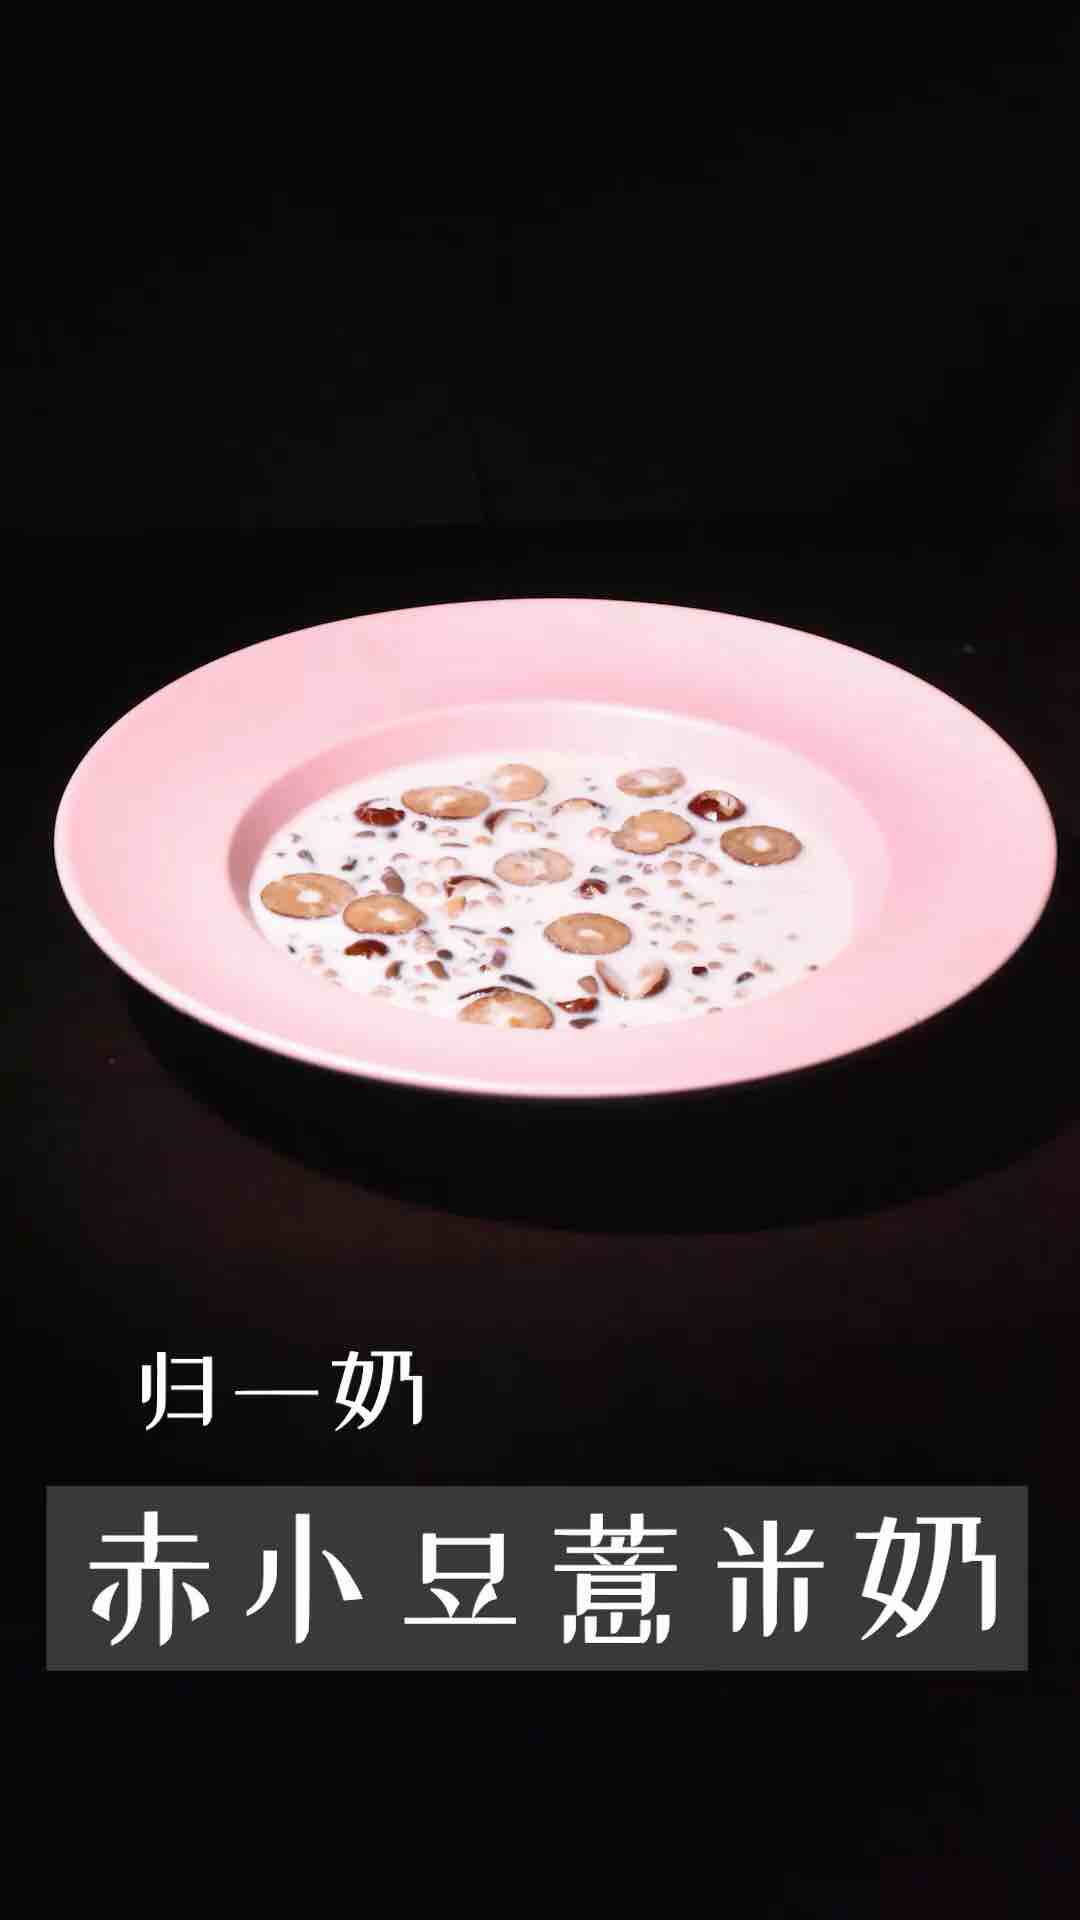 Guiyi | Chixiaodou Barley Milk recipe